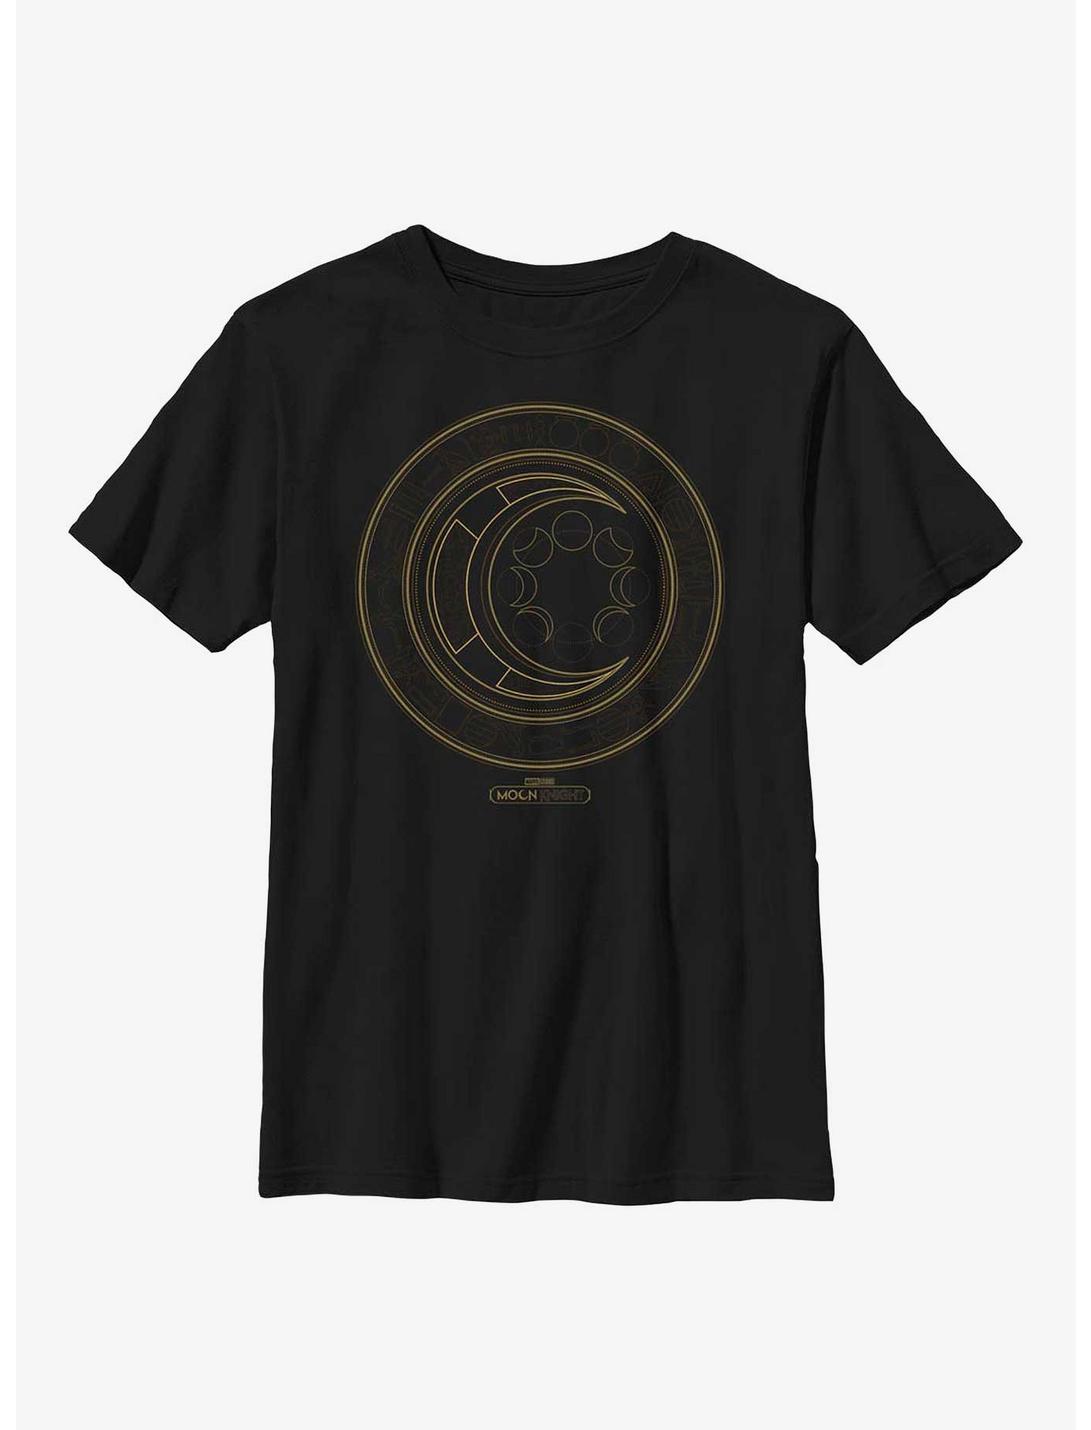 Marvel Moon Knight Hieroglyphics Logo Youth T-Shirt, BLACK, hi-res